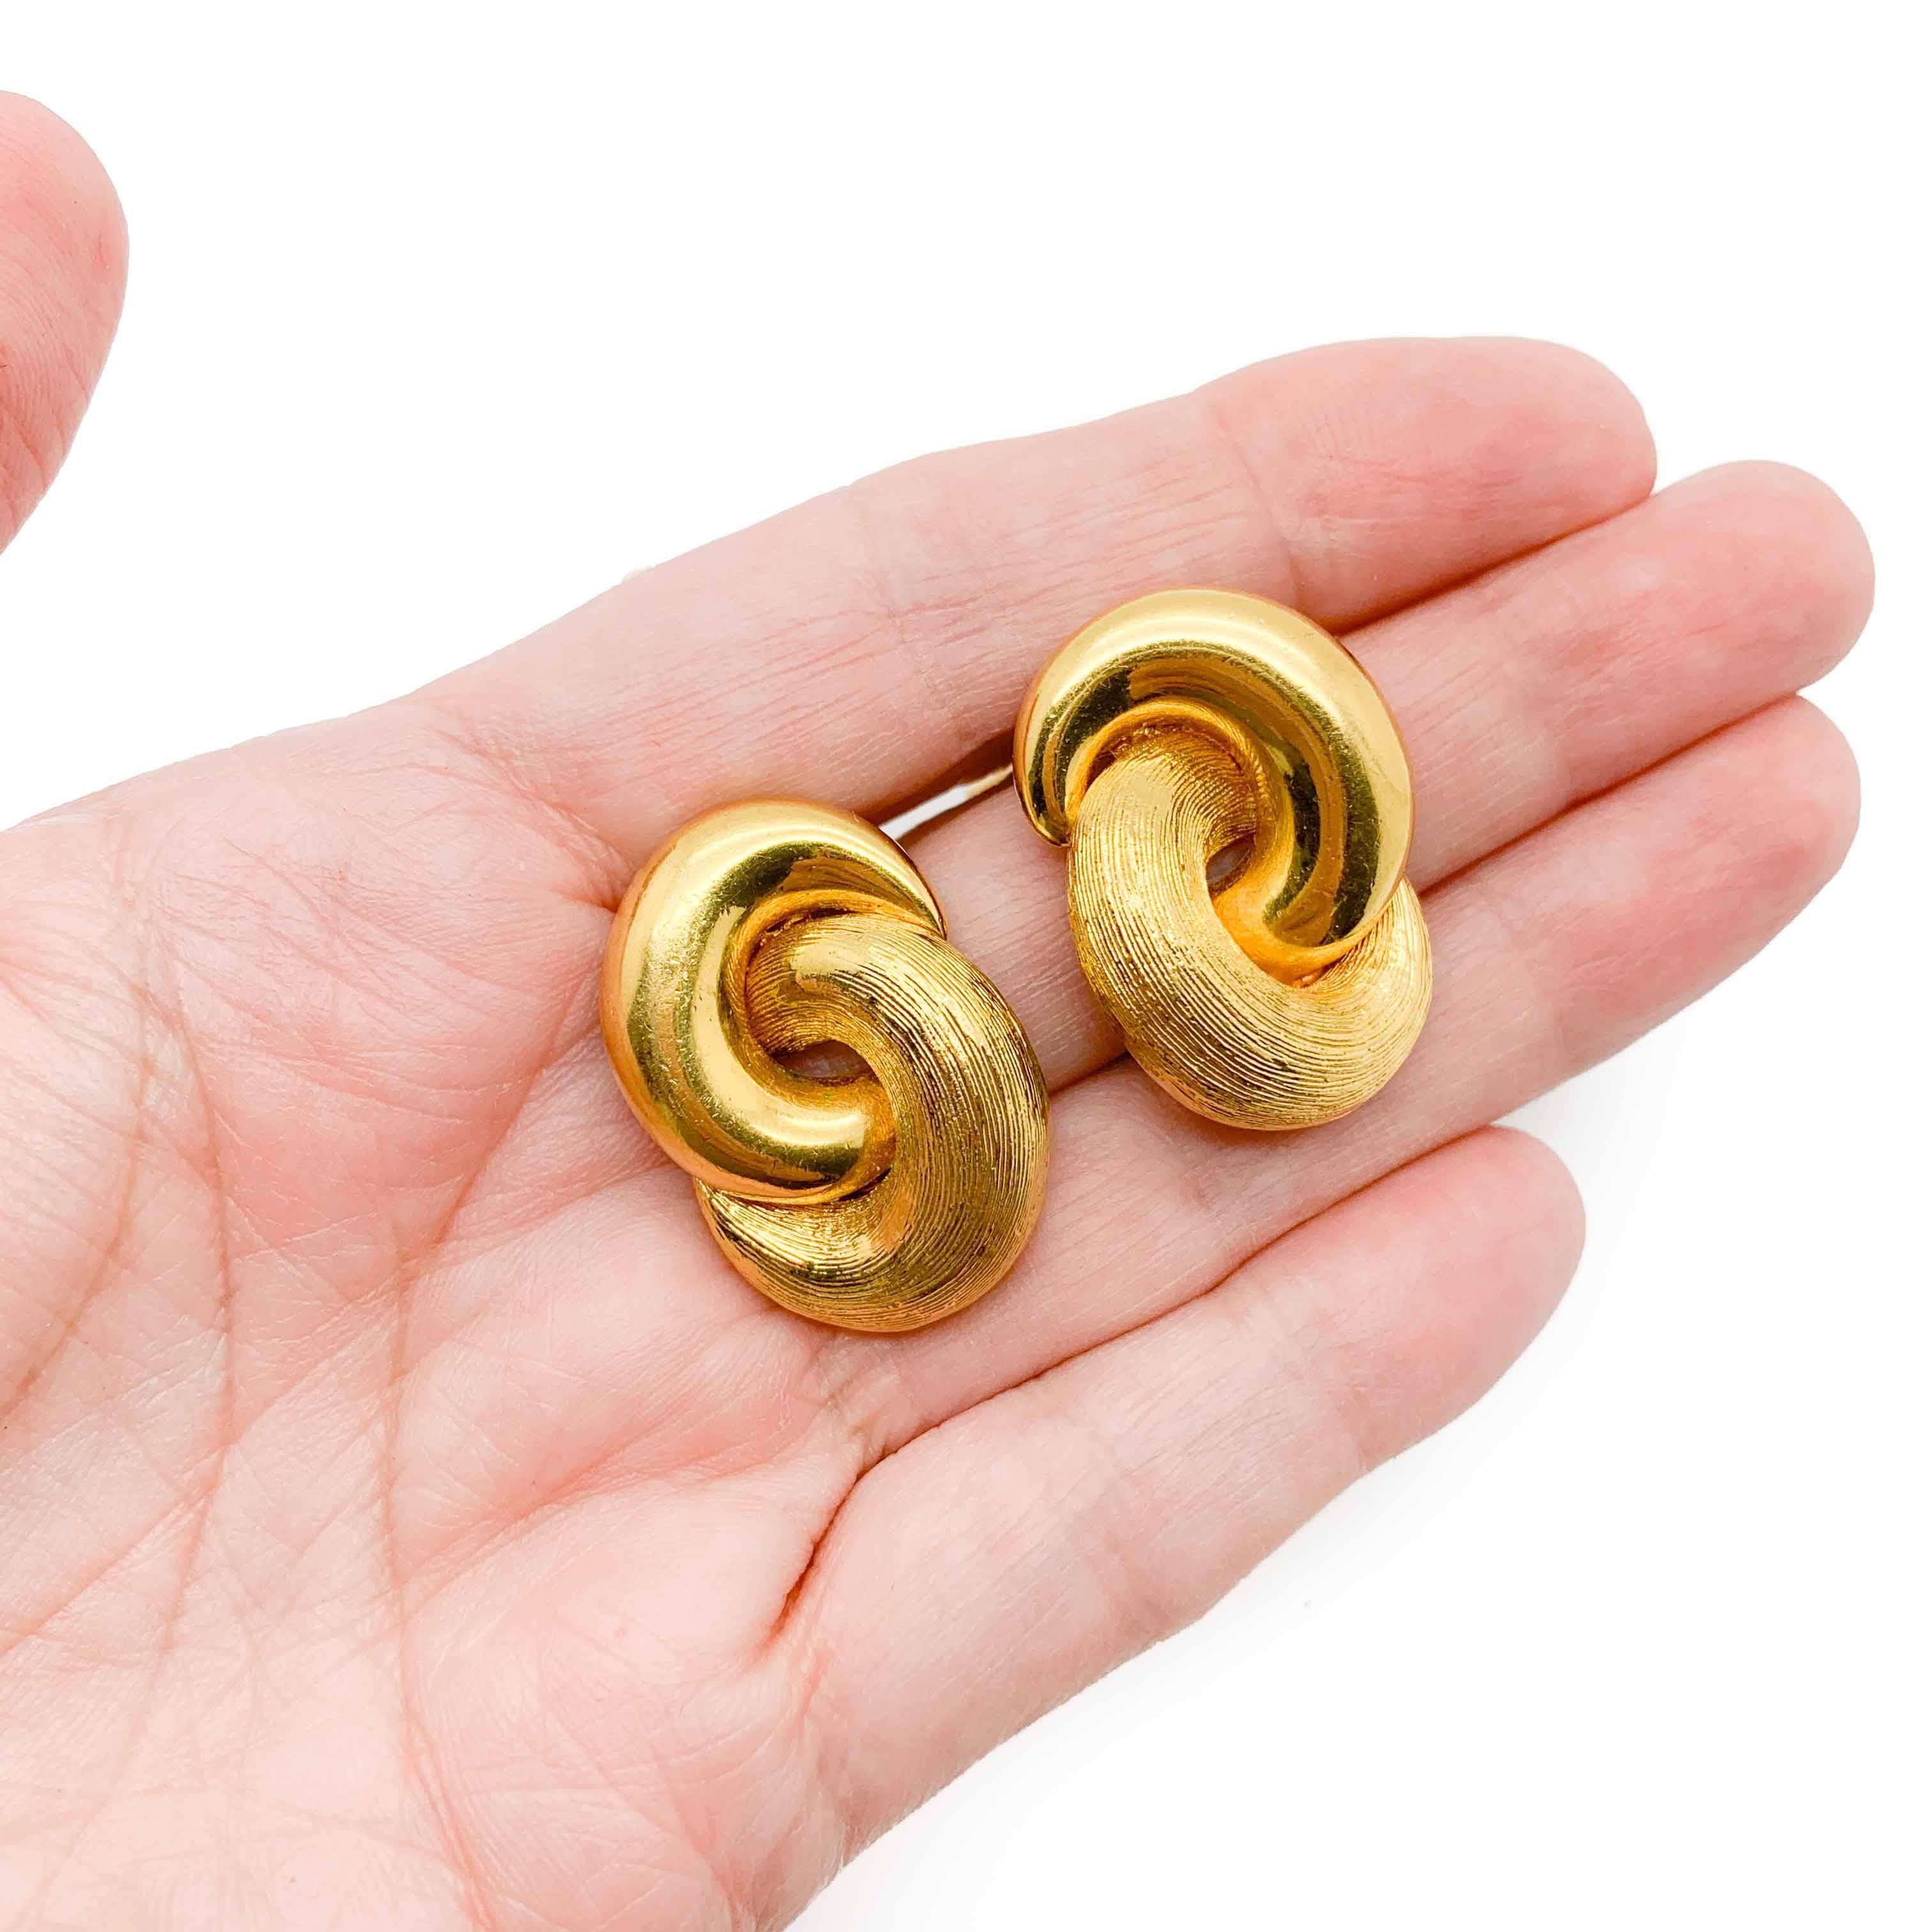 Ein außergewöhnlich fabelhaftes Paar Vintage Dior Love Knot Ohrringe. Mit verschlungenen goldenen Loops, die einen Liebesknoten darstellen.  Hergestellt aus hochwertigem vergoldetem Metall in strukturierter und hochglänzender Ausführung für